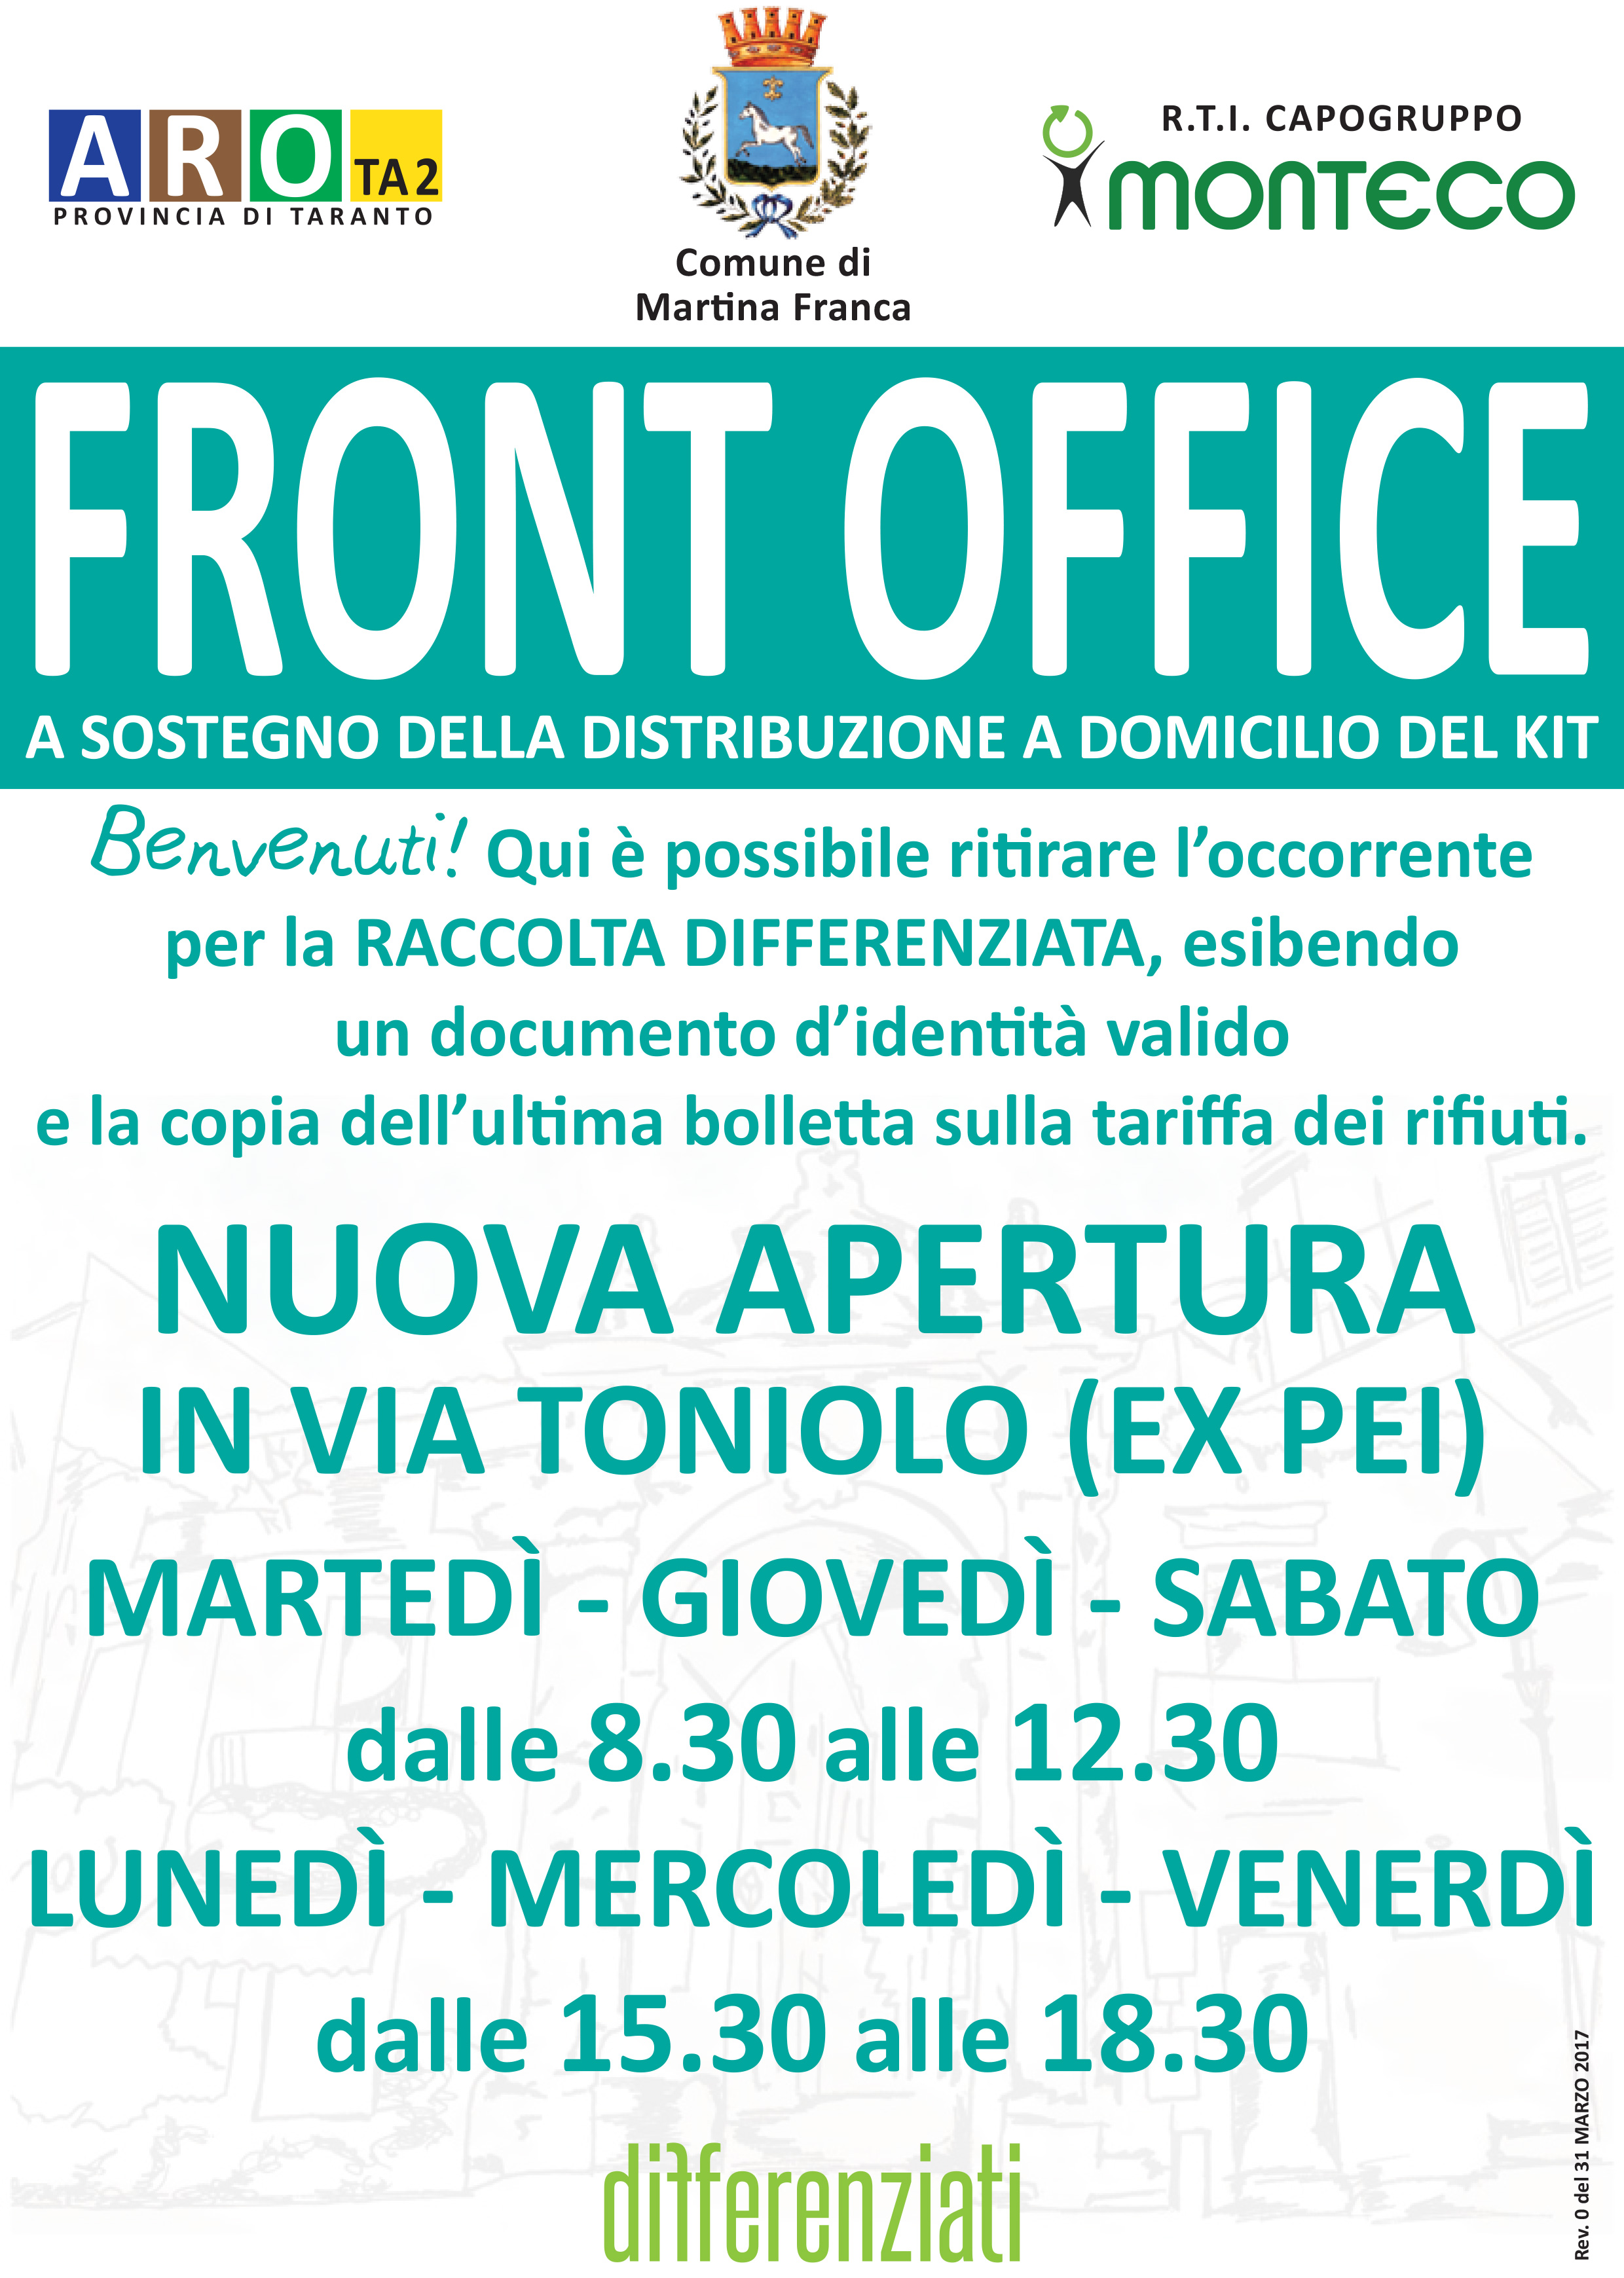 Martina Franca: Apertura di un nuovo Front Office in Via Toniolo (ex PEI)